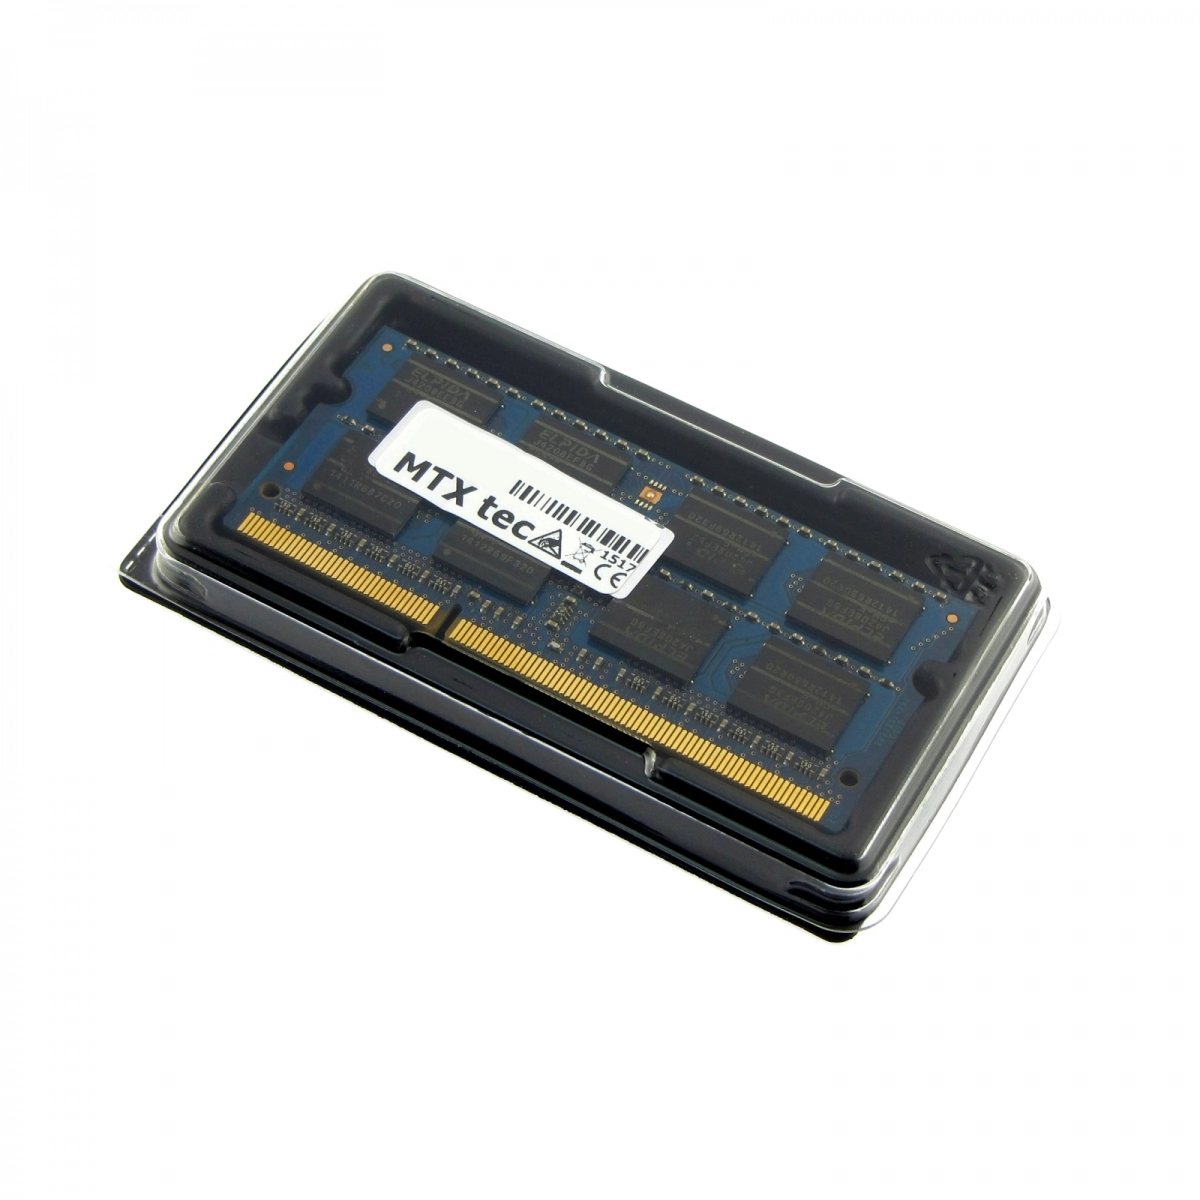 MTXtec Arbeitsspeicher 4 GB RAM für MEDION Akoya E6416 MD99530